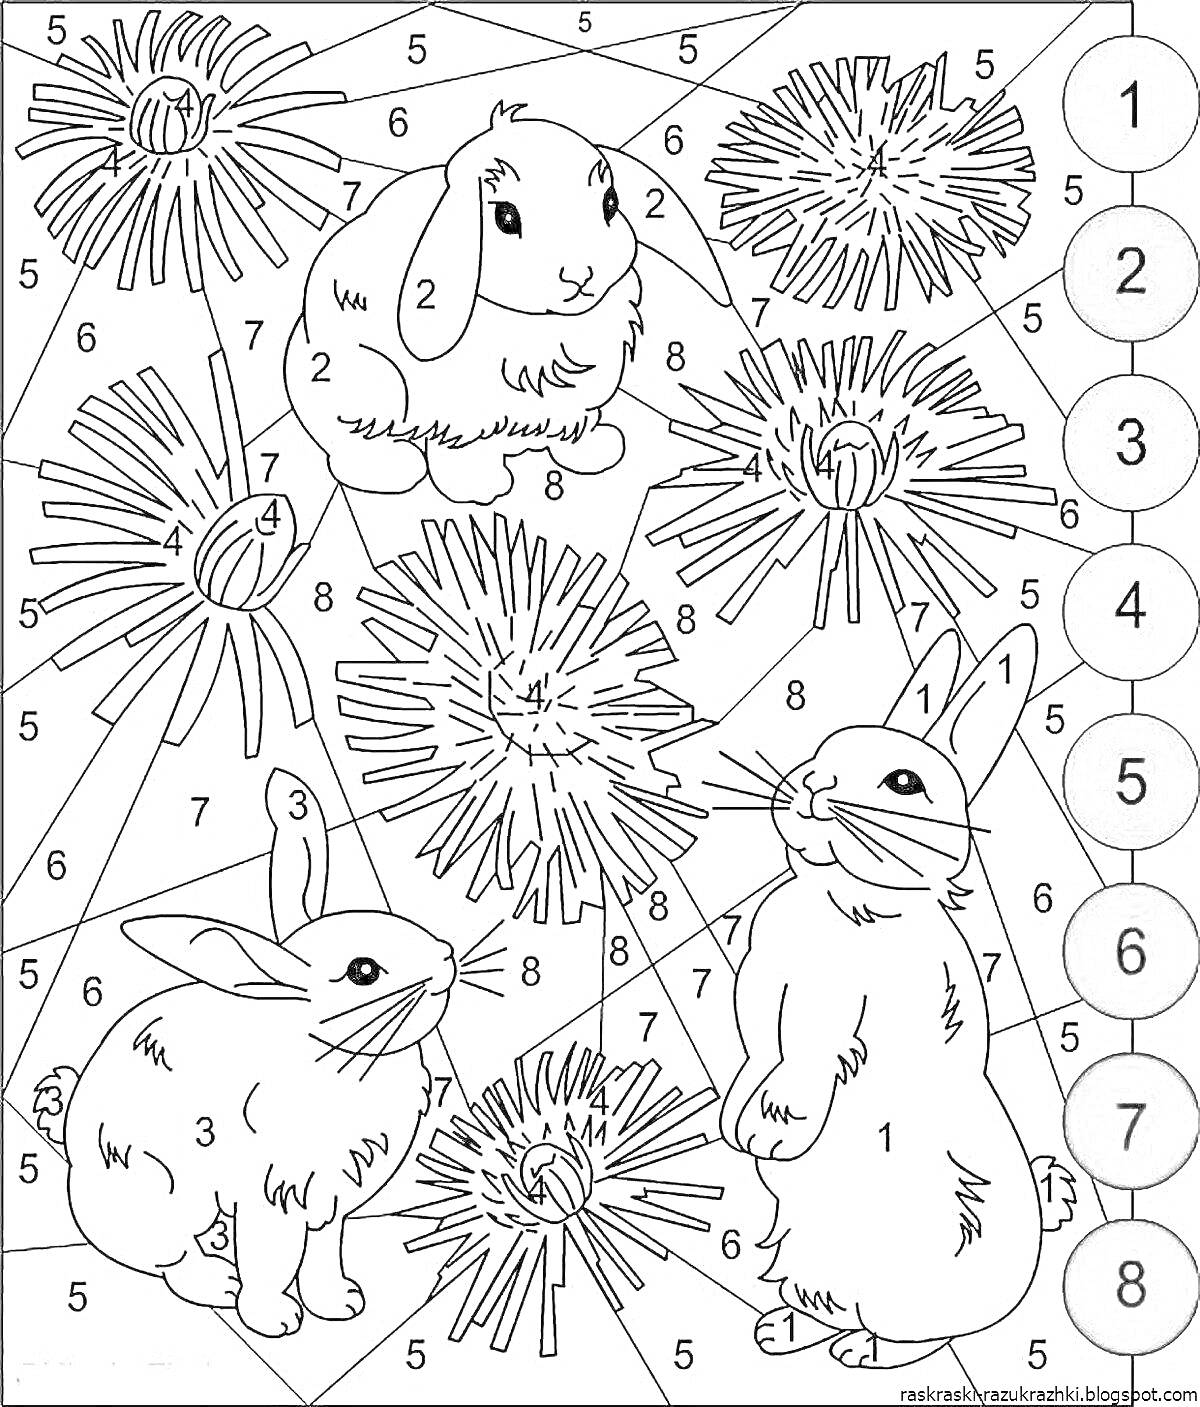 РаскраскаТри кролика и цветы-одуванчики